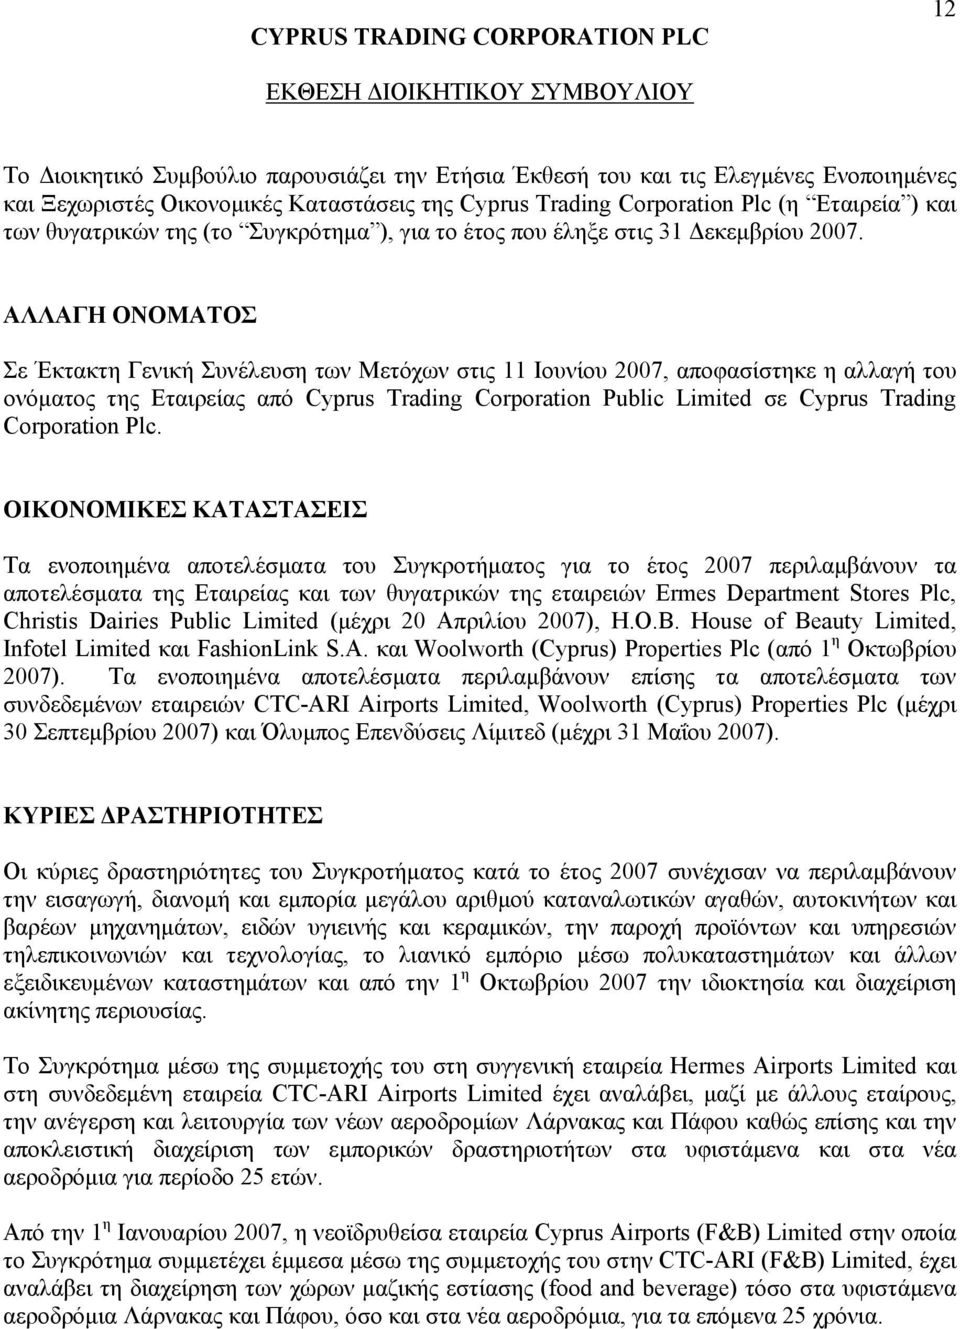 ΑΛΛΑΓΗ ΟΝΟΜΑΤΟΣ Σε Έκτακτη Γενική Συνέλευση των Μετόχων στις 11 Ιουνίου 2007, αποφασίστηκε η αλλαγή του ονόματος της Εταιρείας από Cyprus Trading Corporation Public Limited σε Cyprus Trading